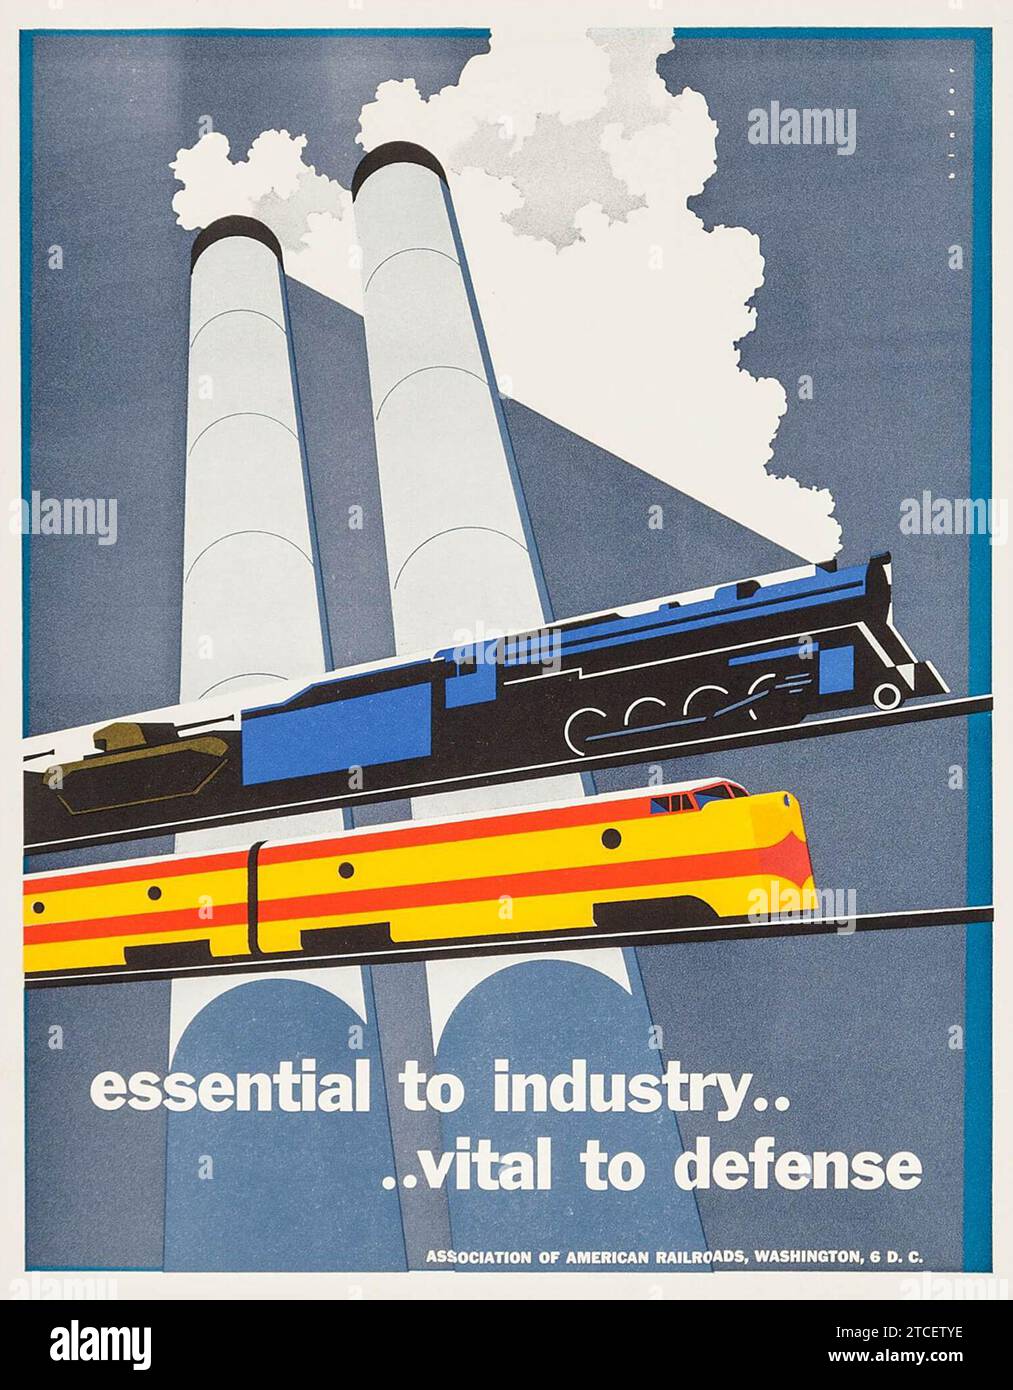 Essenziale per l'industria... Vital to Defense (Association of American Railroads, 1951). Poster ferroviario Foto Stock